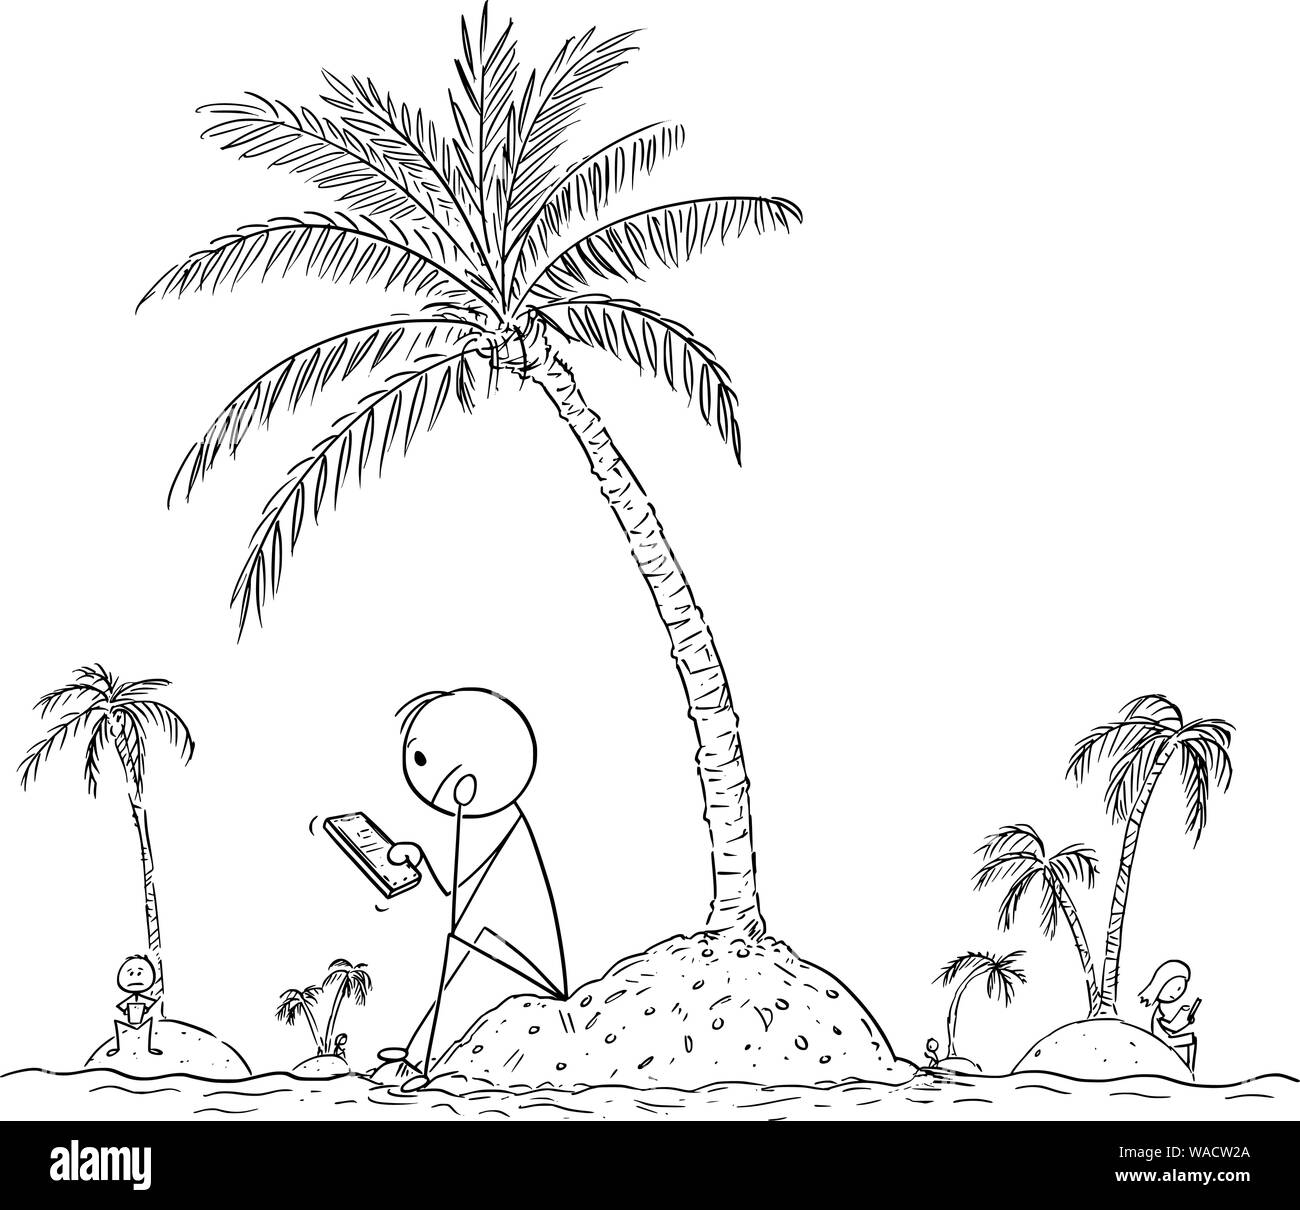 Vektor cartoon Strichmännchen Zeichnen konzeptionelle Darstellung der einsame Menschen allein sitzen auf kleinen Inseln, mit Online-Handy oder Handy und über soziale Netzwerke mit virtuellen Freunden zu chatten. Stock Vektor